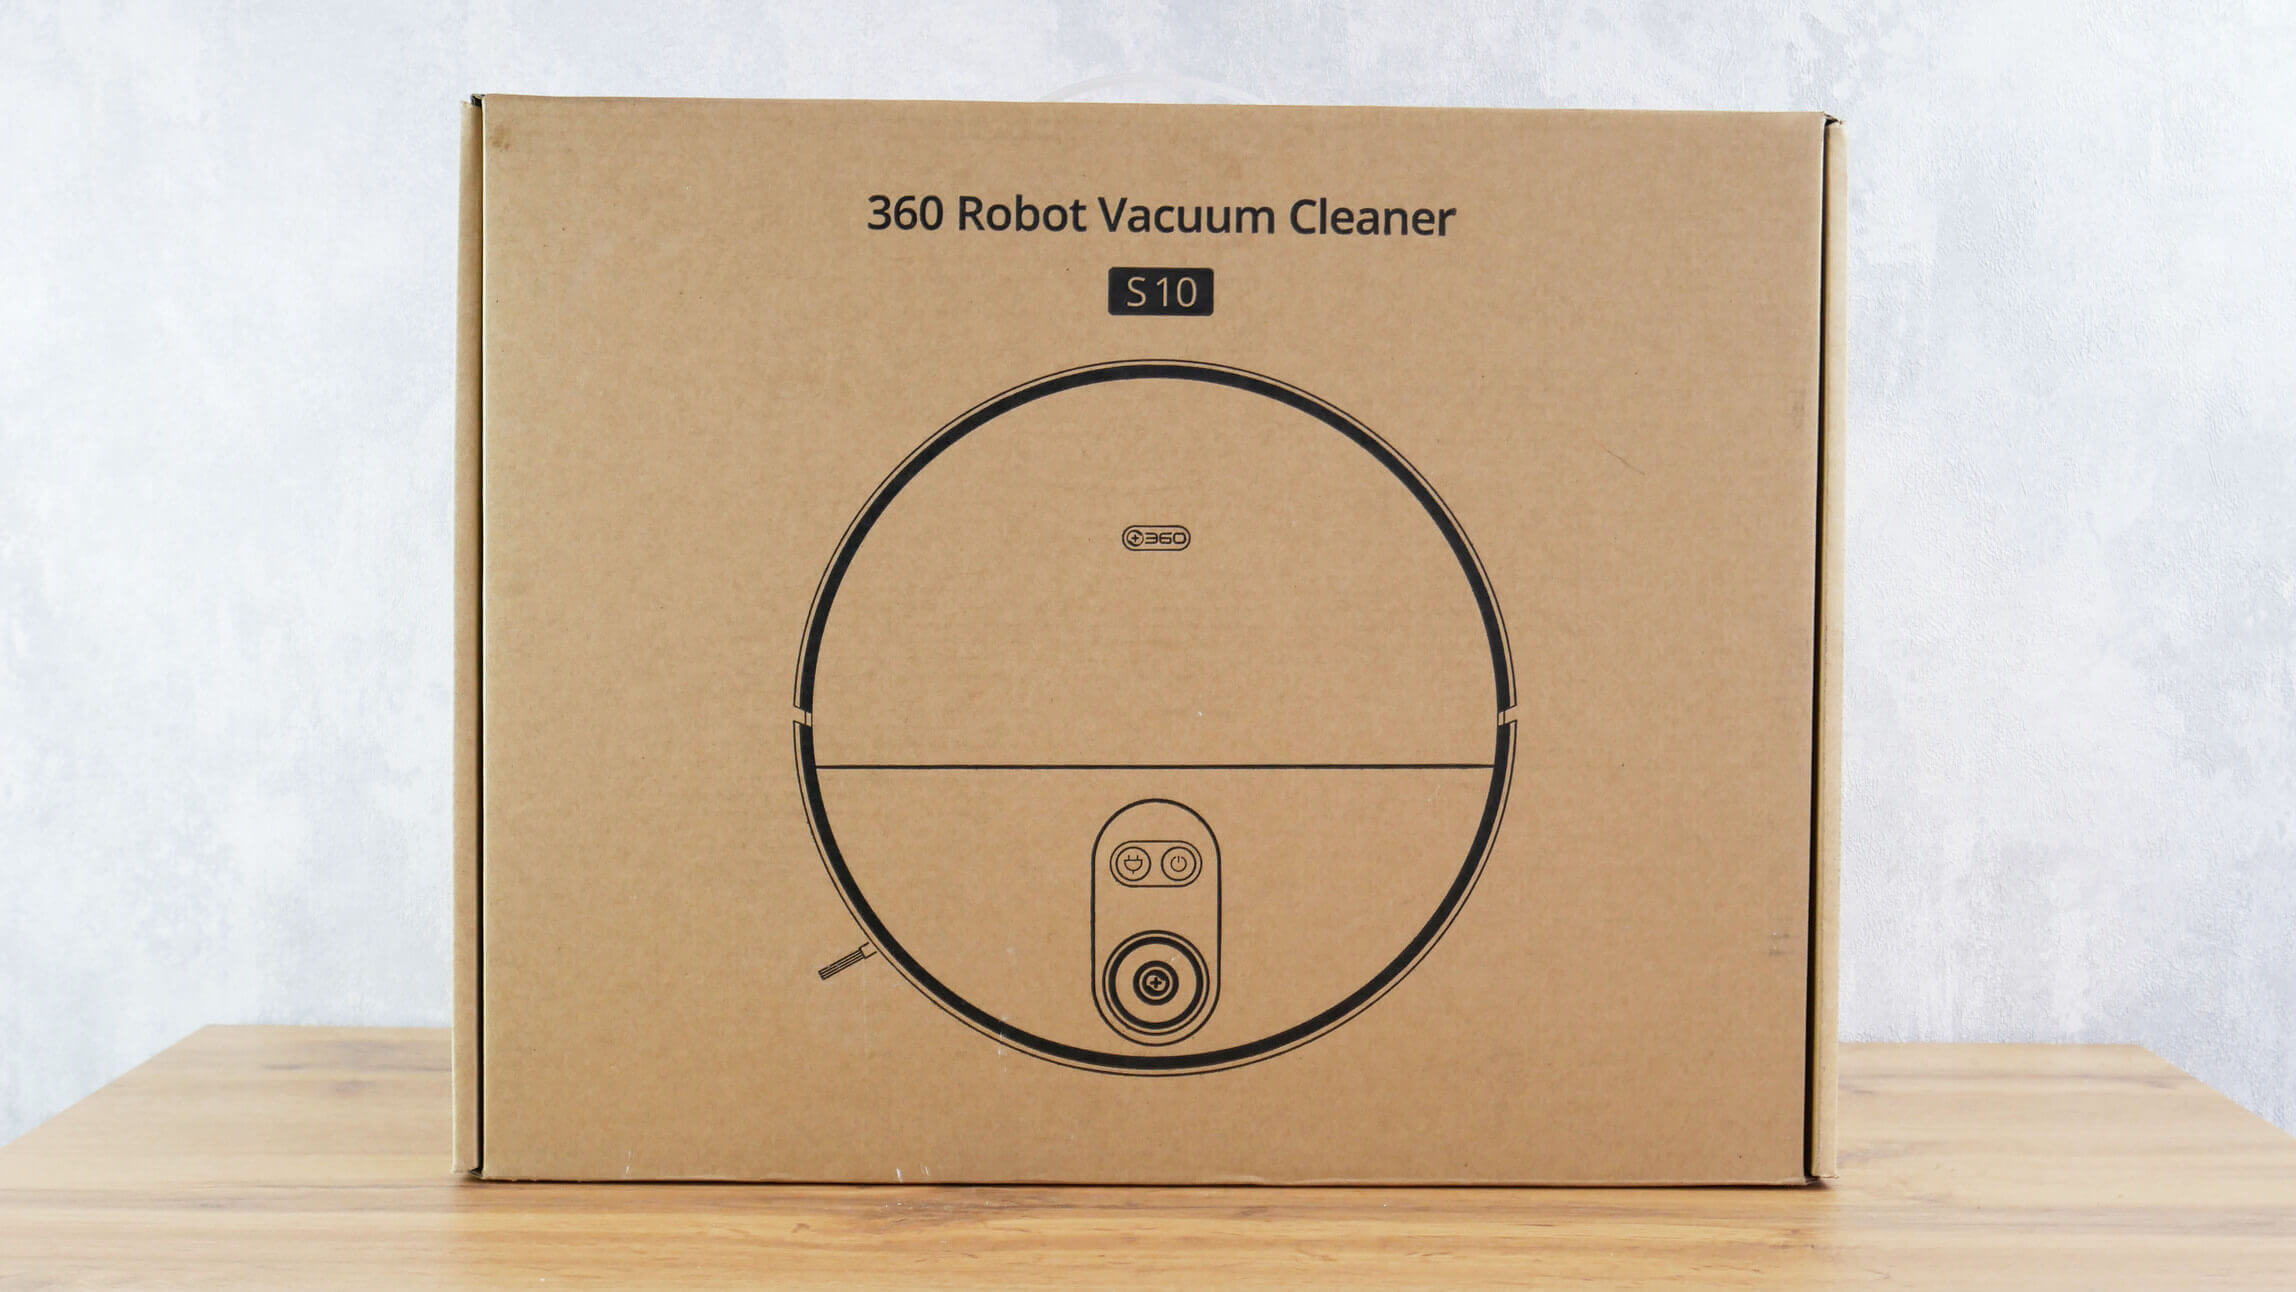 360 robot vacuum cleaner